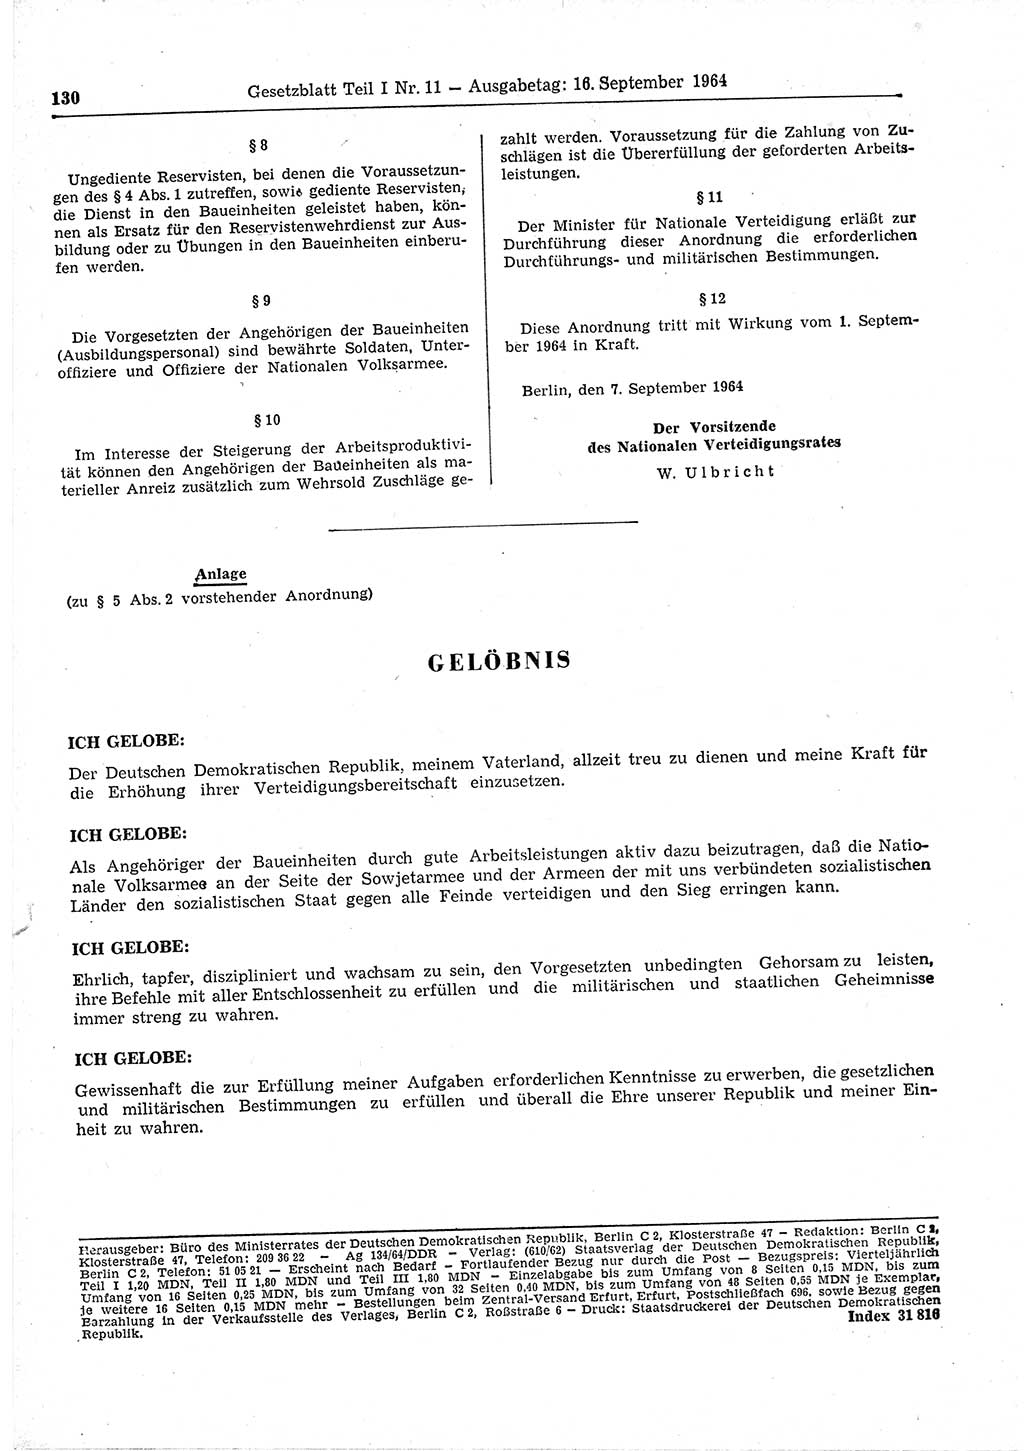 Gesetzblatt (GBl.) der Deutschen Demokratischen Republik (DDR) Teil Ⅰ 1964, Seite 130 (GBl. DDR Ⅰ 1964, S. 130)